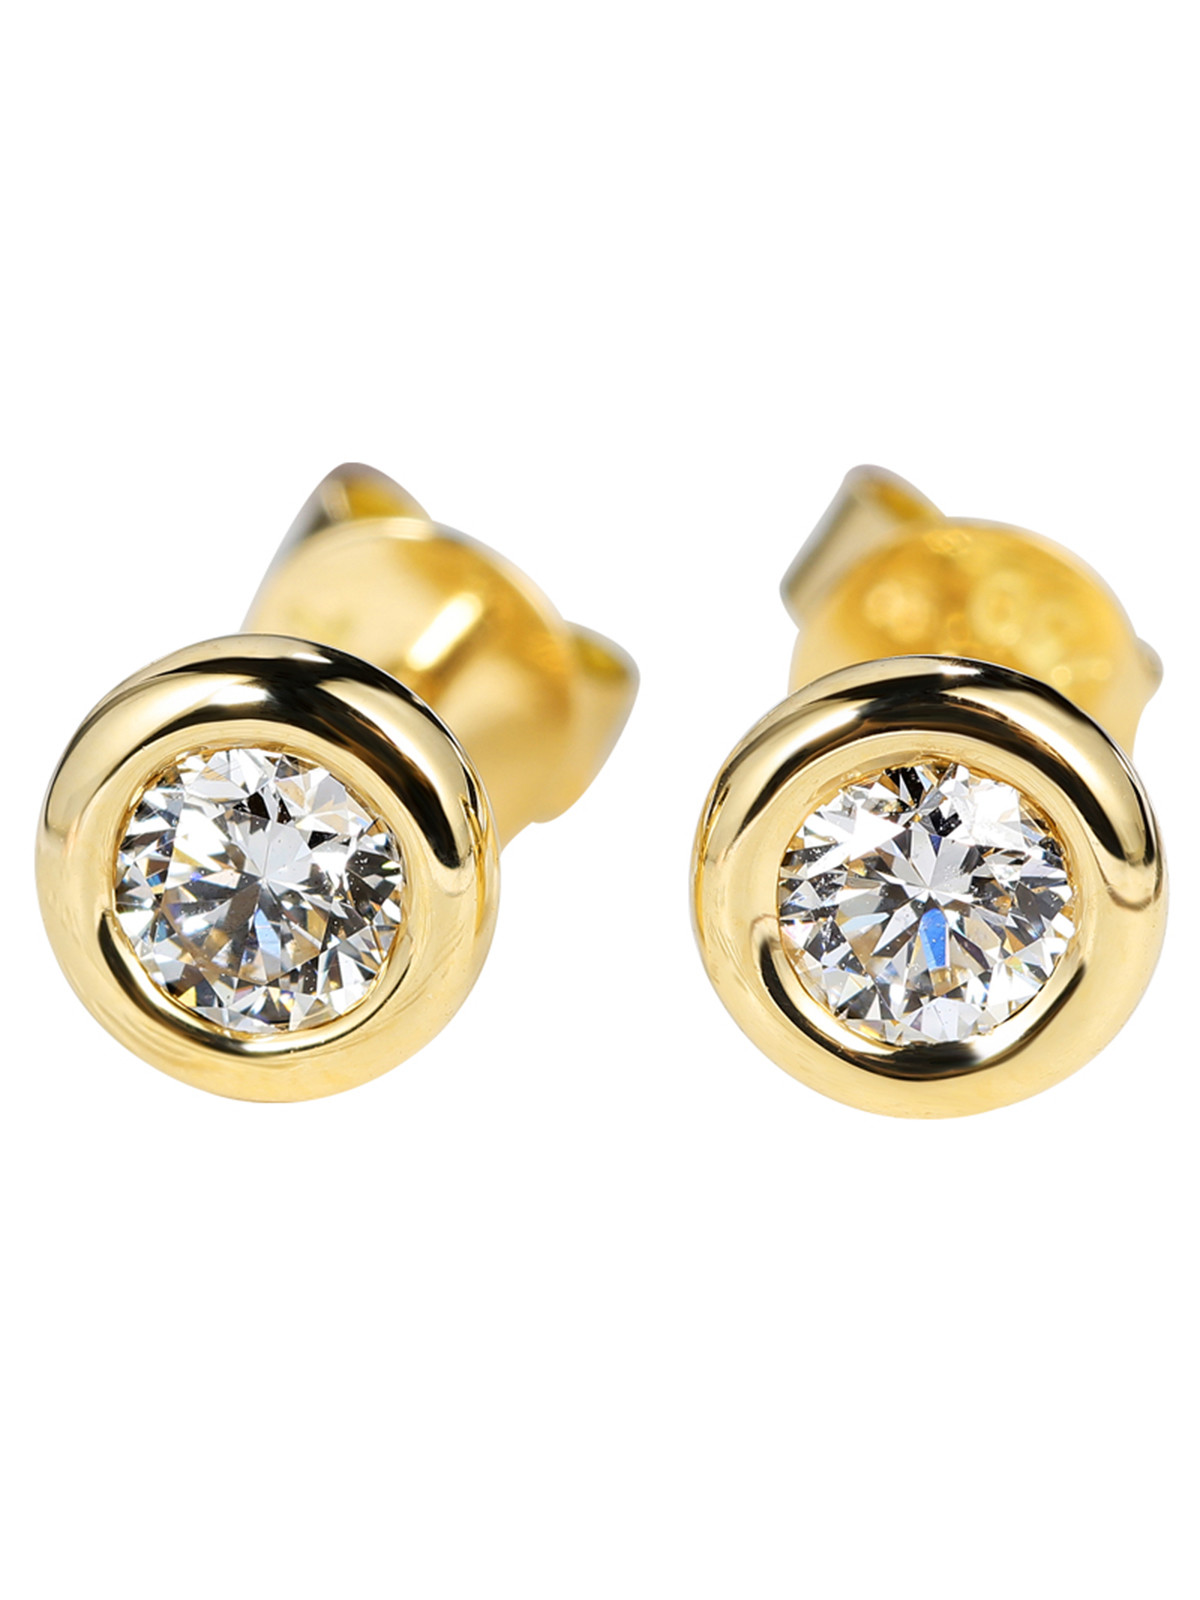 Cheap Vivienne Westwood Cartilage Earrings 18K Gold Diamond Earrings for women for sale